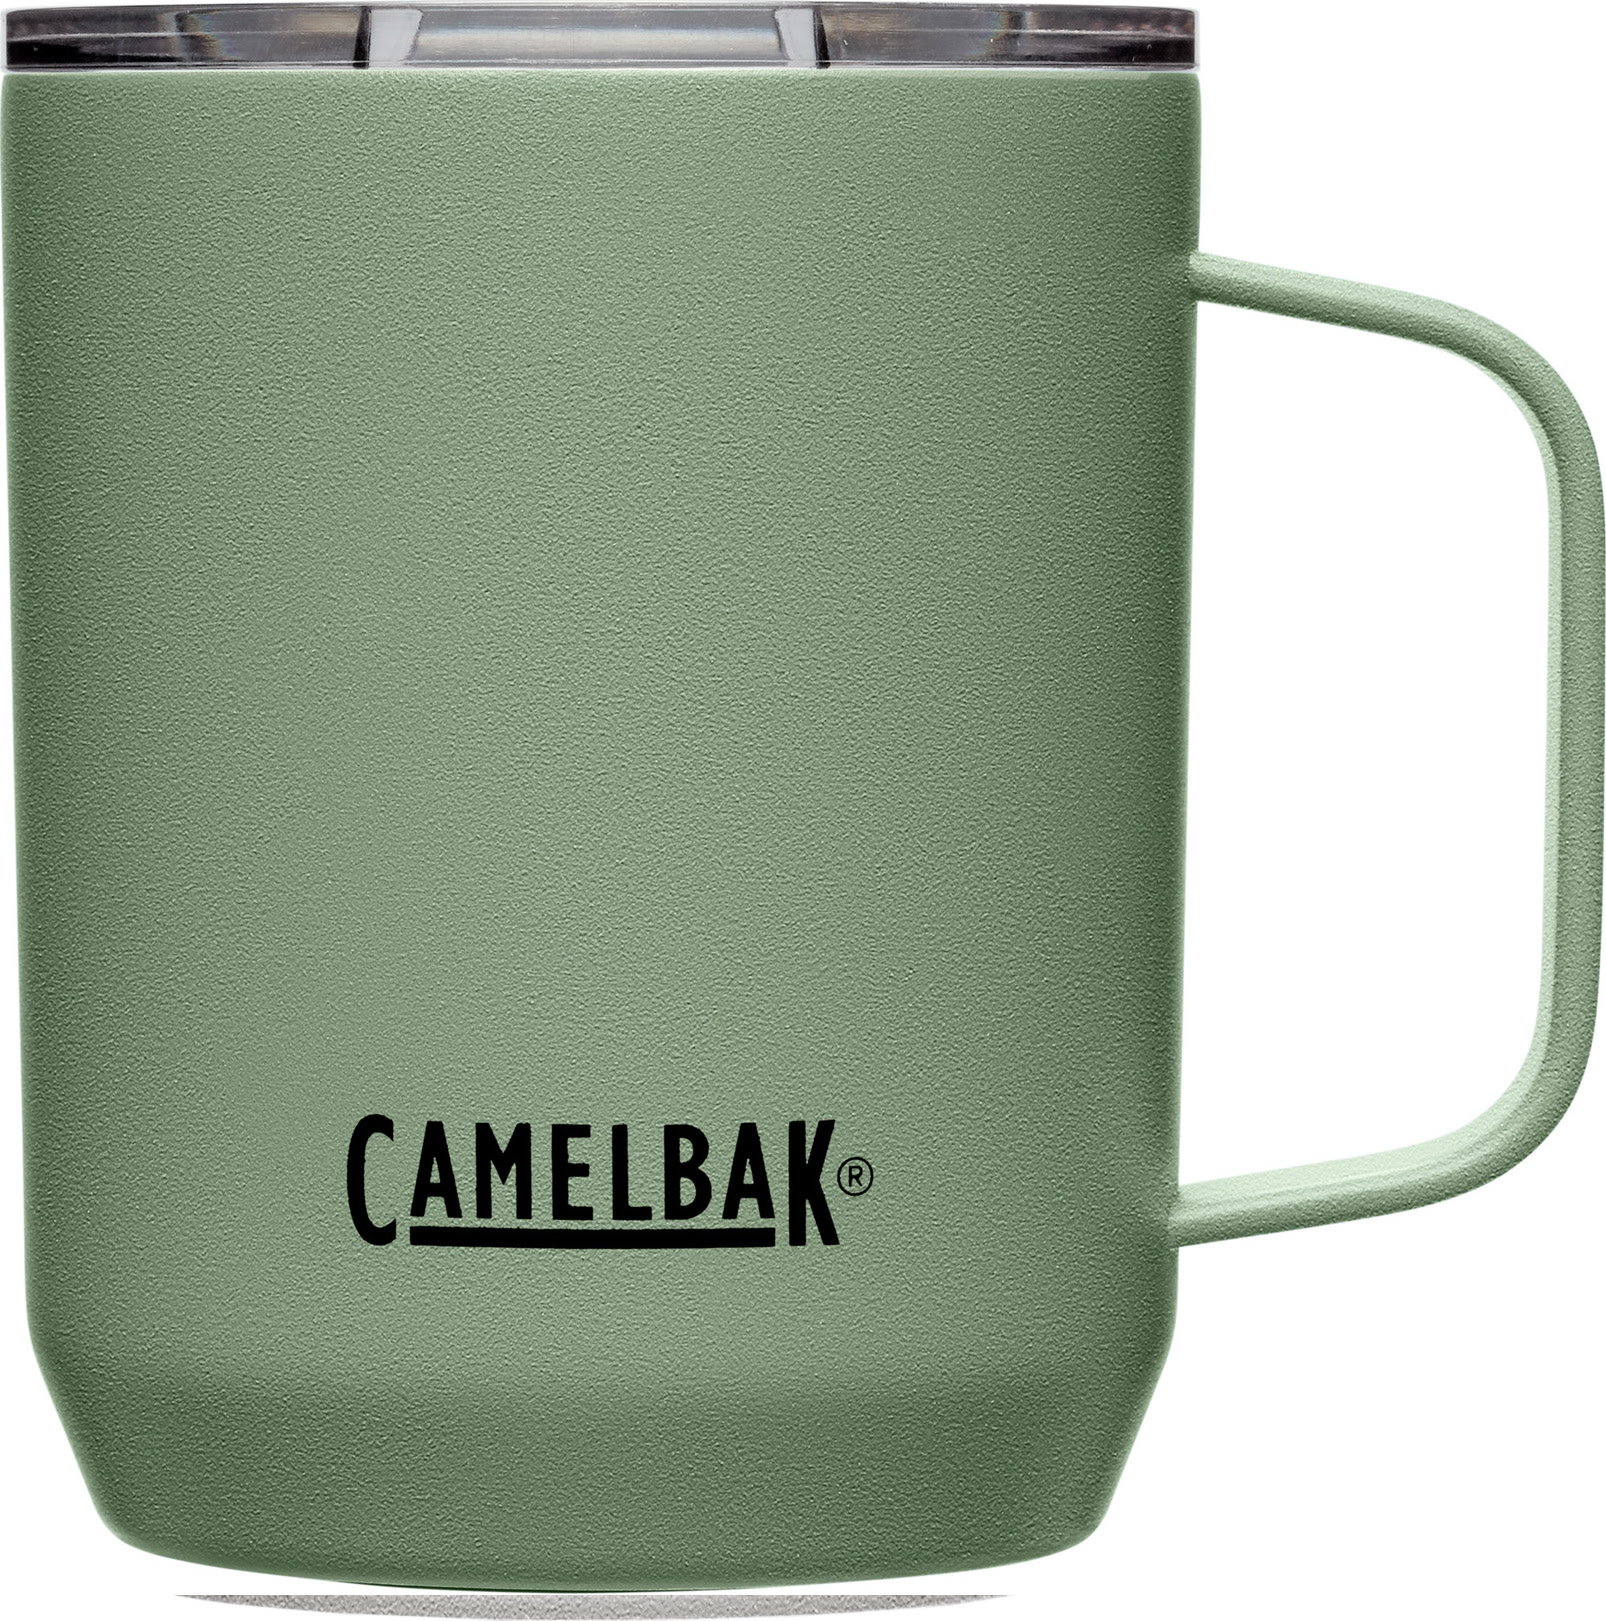 CamelBak Horizon Camp Mug Stainless Steel Vacuum Insulated Moss